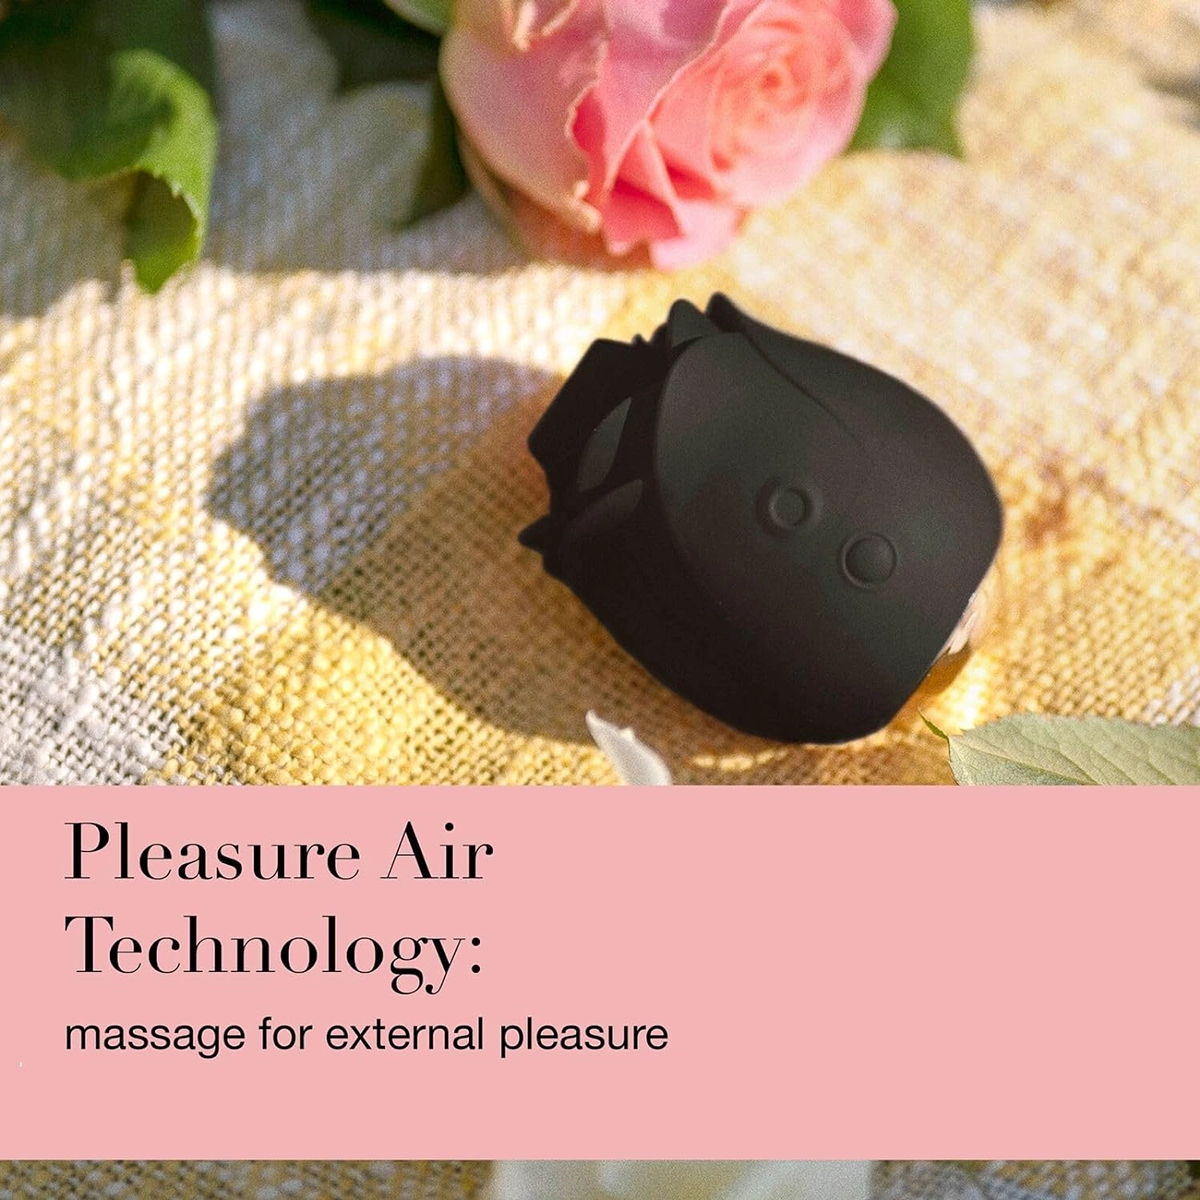 sử dụng công nghệ Pleasure Air nguyên bản